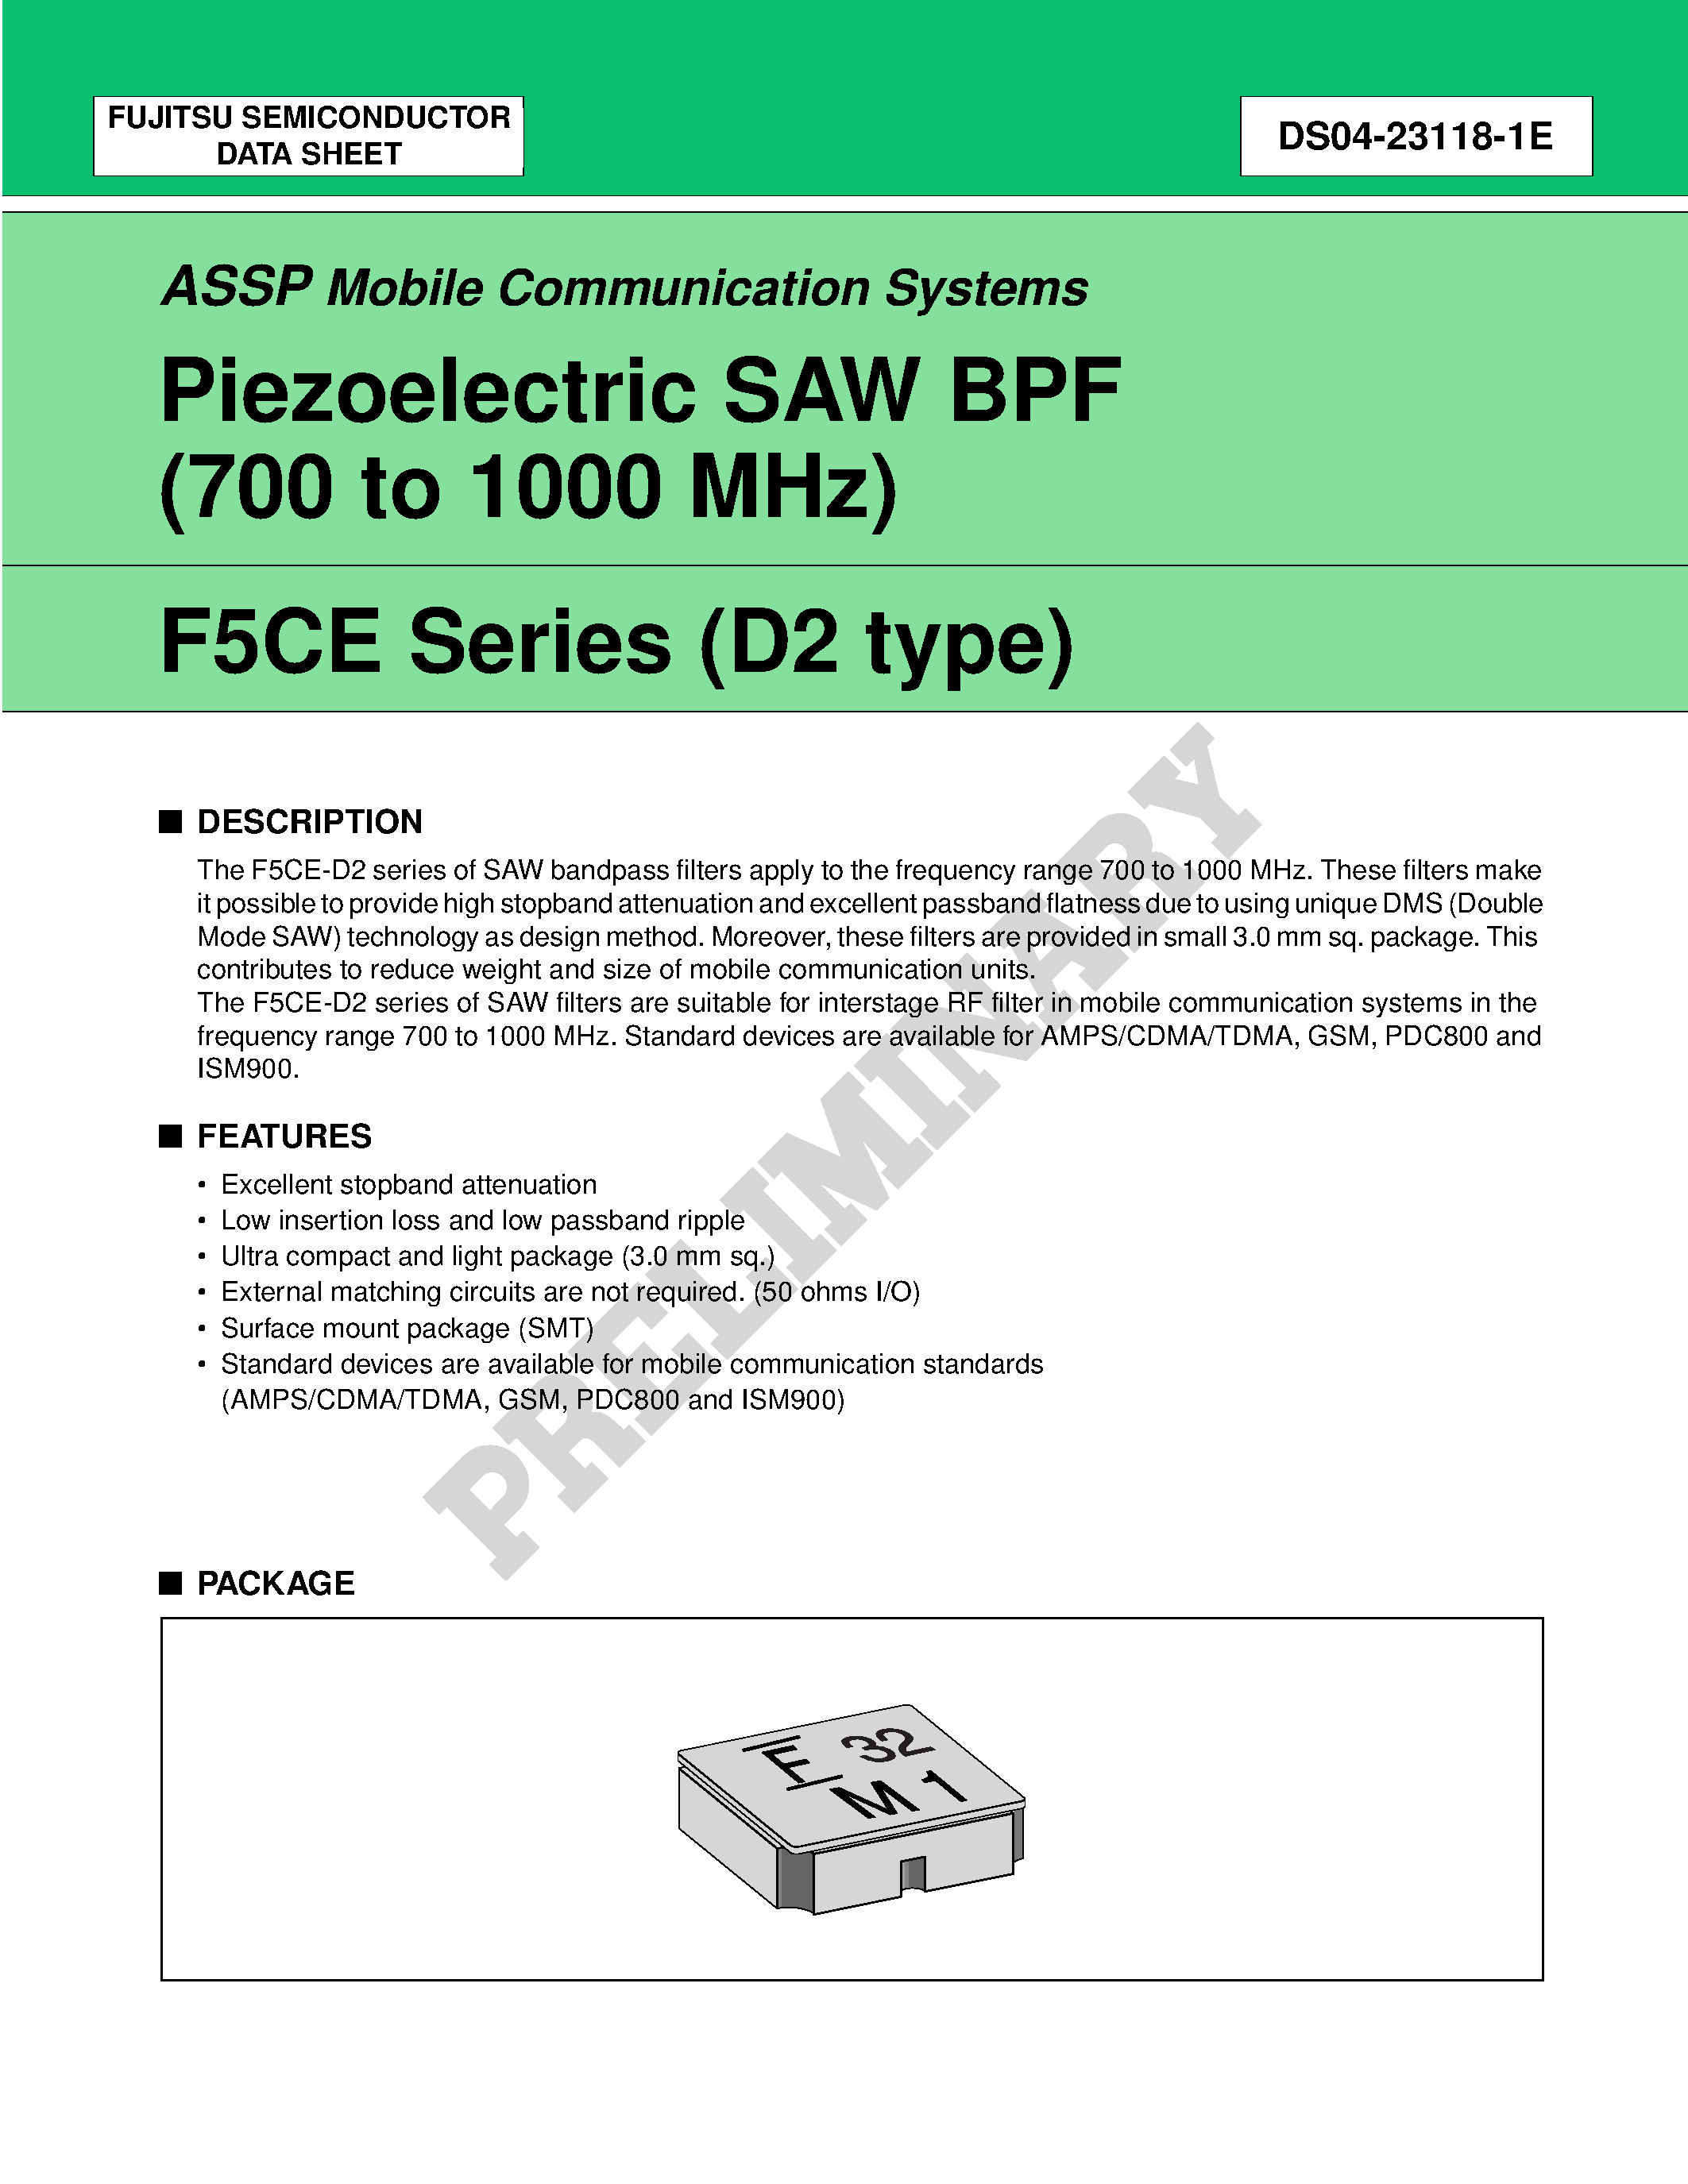 Datasheet FAR-F5CE-950M00-K201-V - Piezoelectric SAW BPF (700 to 1700 MHz) page 1